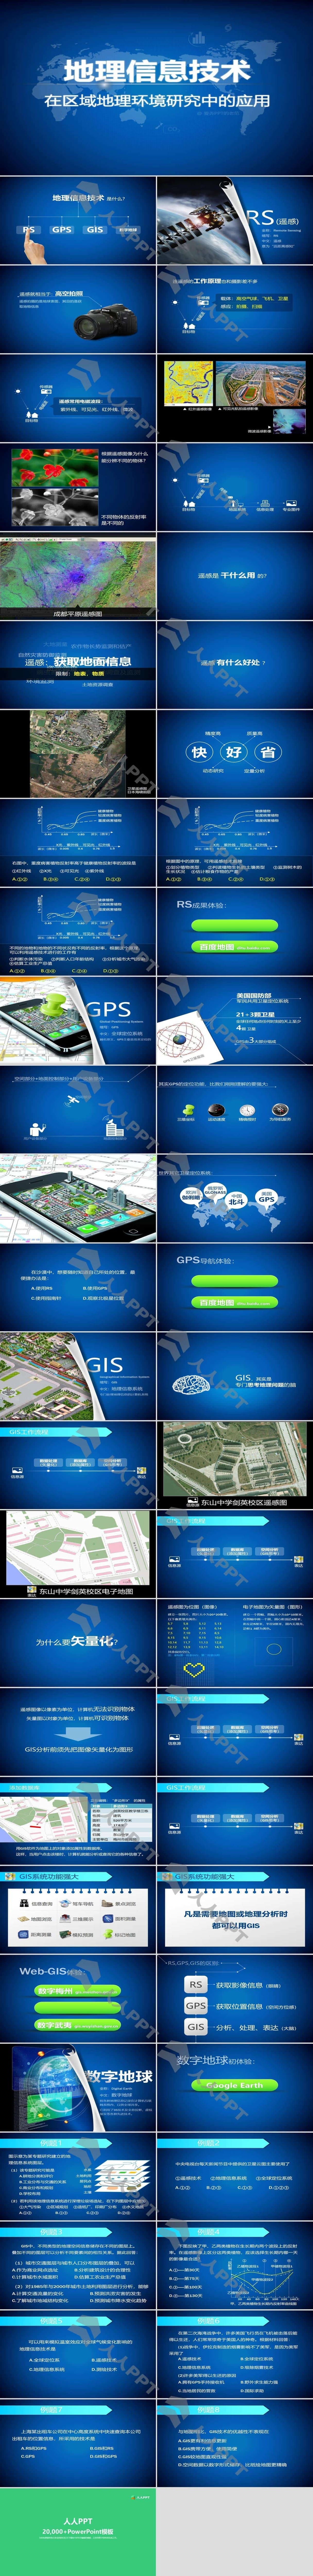 地理信息技术在区域地理环境研究中的应用PPT模板长图